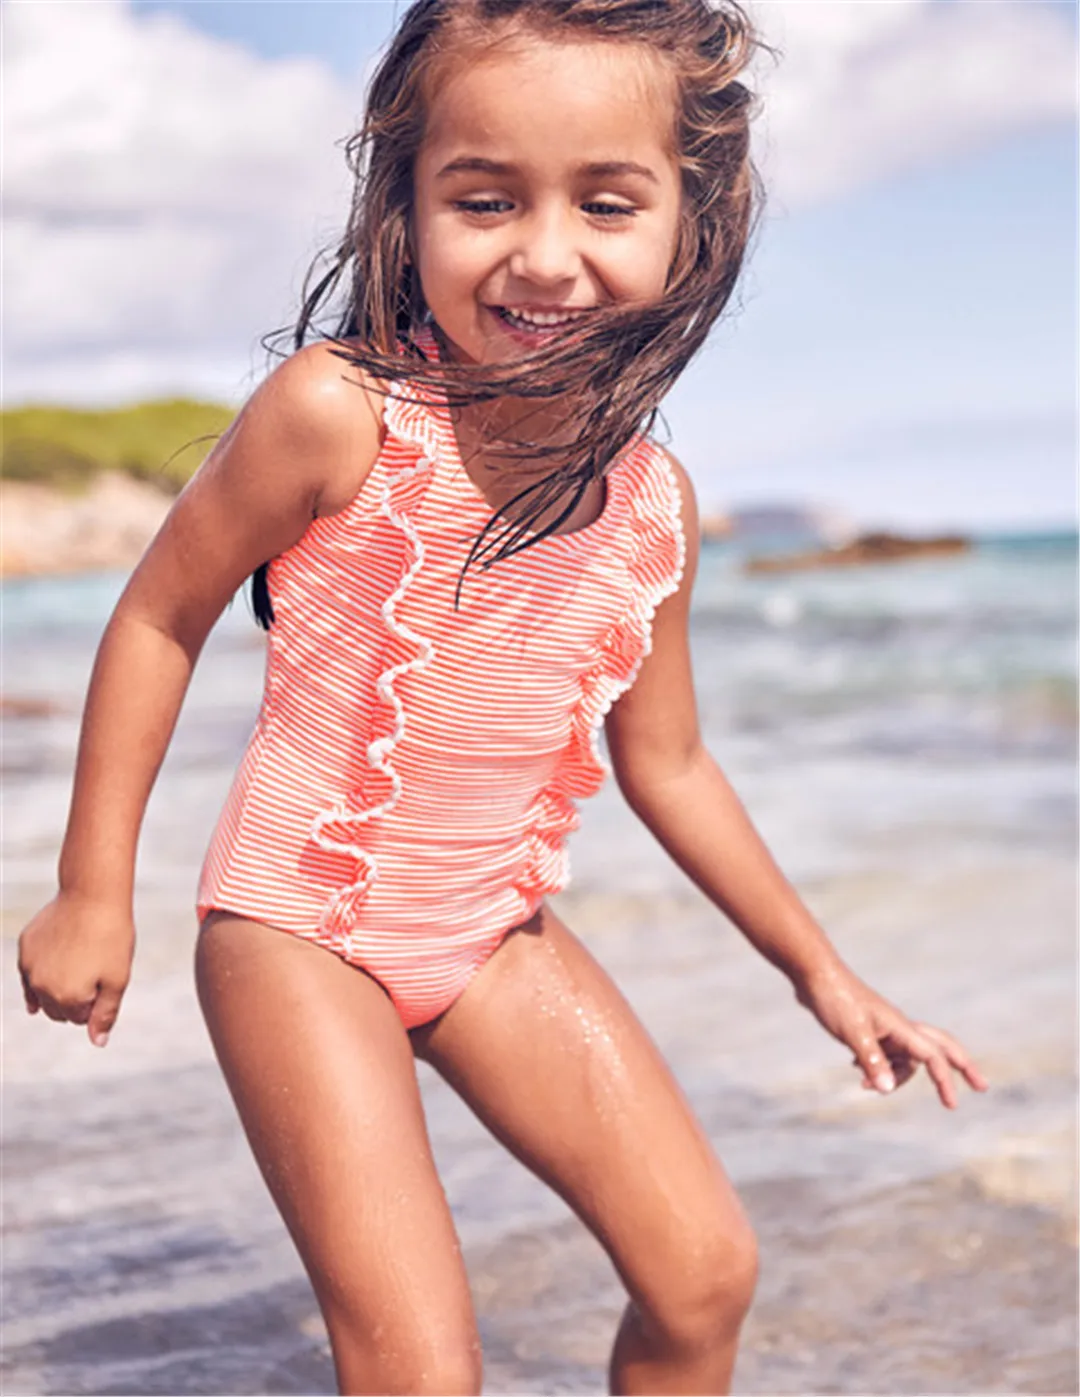 Летний купальный костюм для новорожденных, милый купальный костюм в полоску для мальчиков и девочек, детский купальный костюм для девочек, детская пляжная одежда